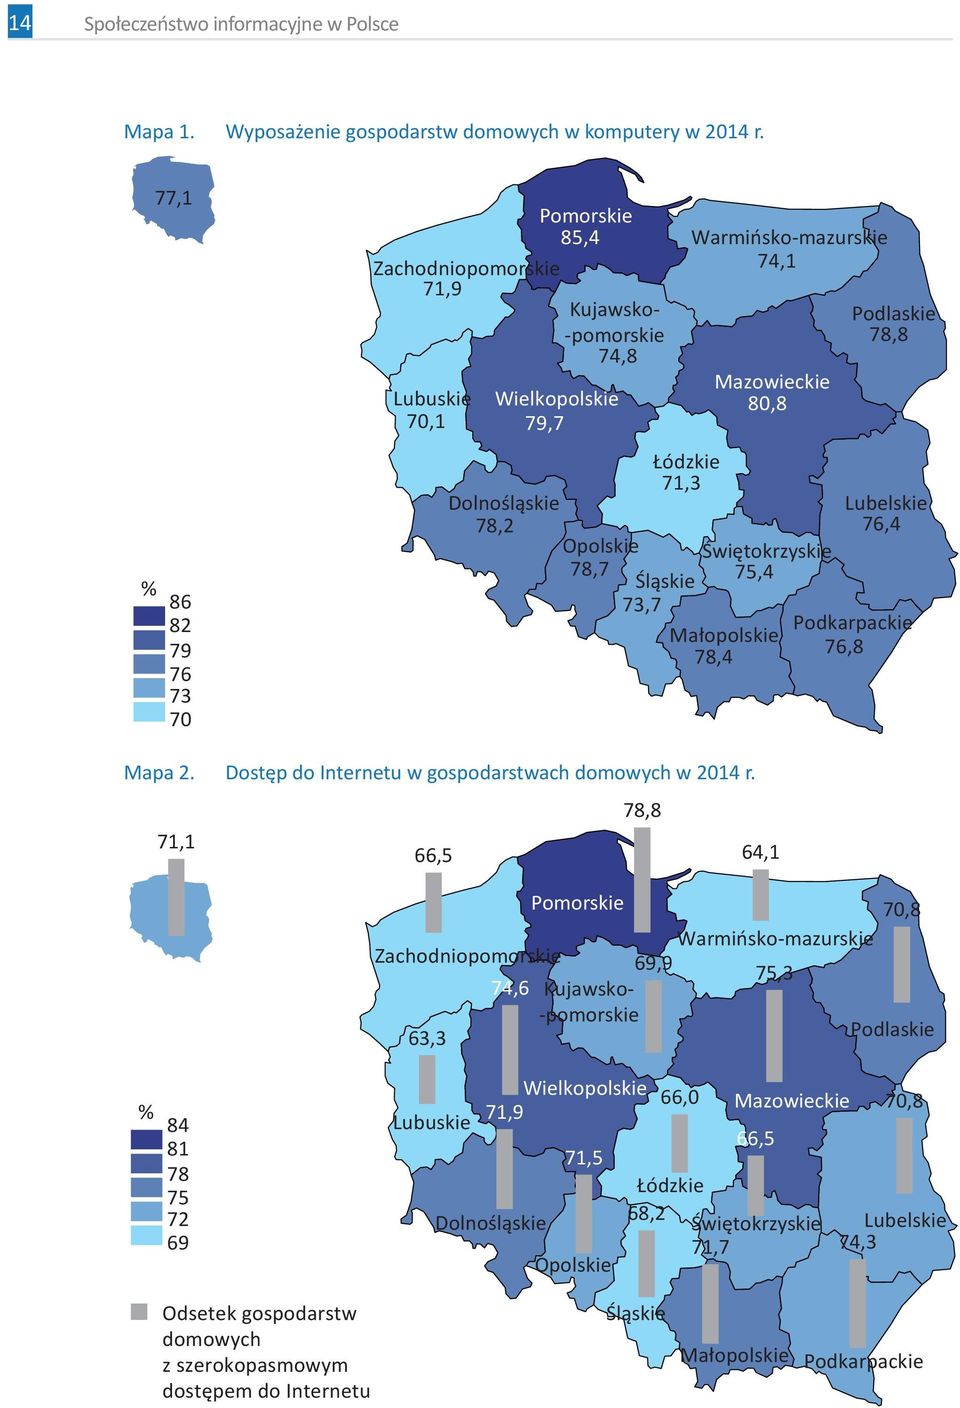 Małopolskie 78,4 Podlaskie 78,8 Lubelskie 76,4 Podkarpackie 76,8 Mapa 2. Dostęp do Internetu w gospodarstwach domowych w 2014 r.